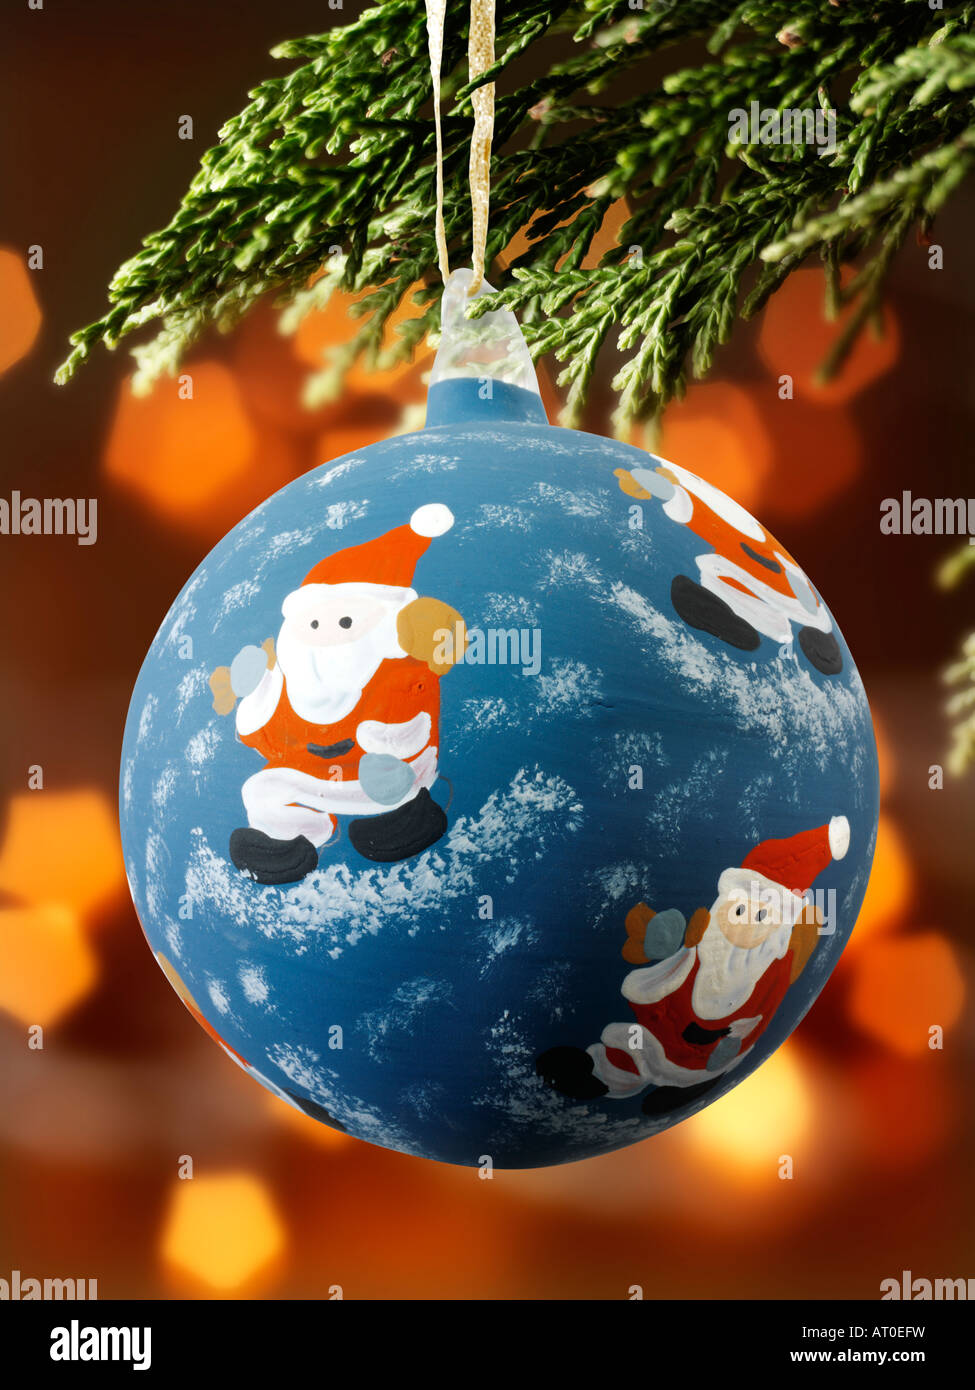 Traditionelle festlich geschmückte weihnachtsbaumkugel, die an Weihnachten hängt Baum mit Lichtern dahinter Stockfoto